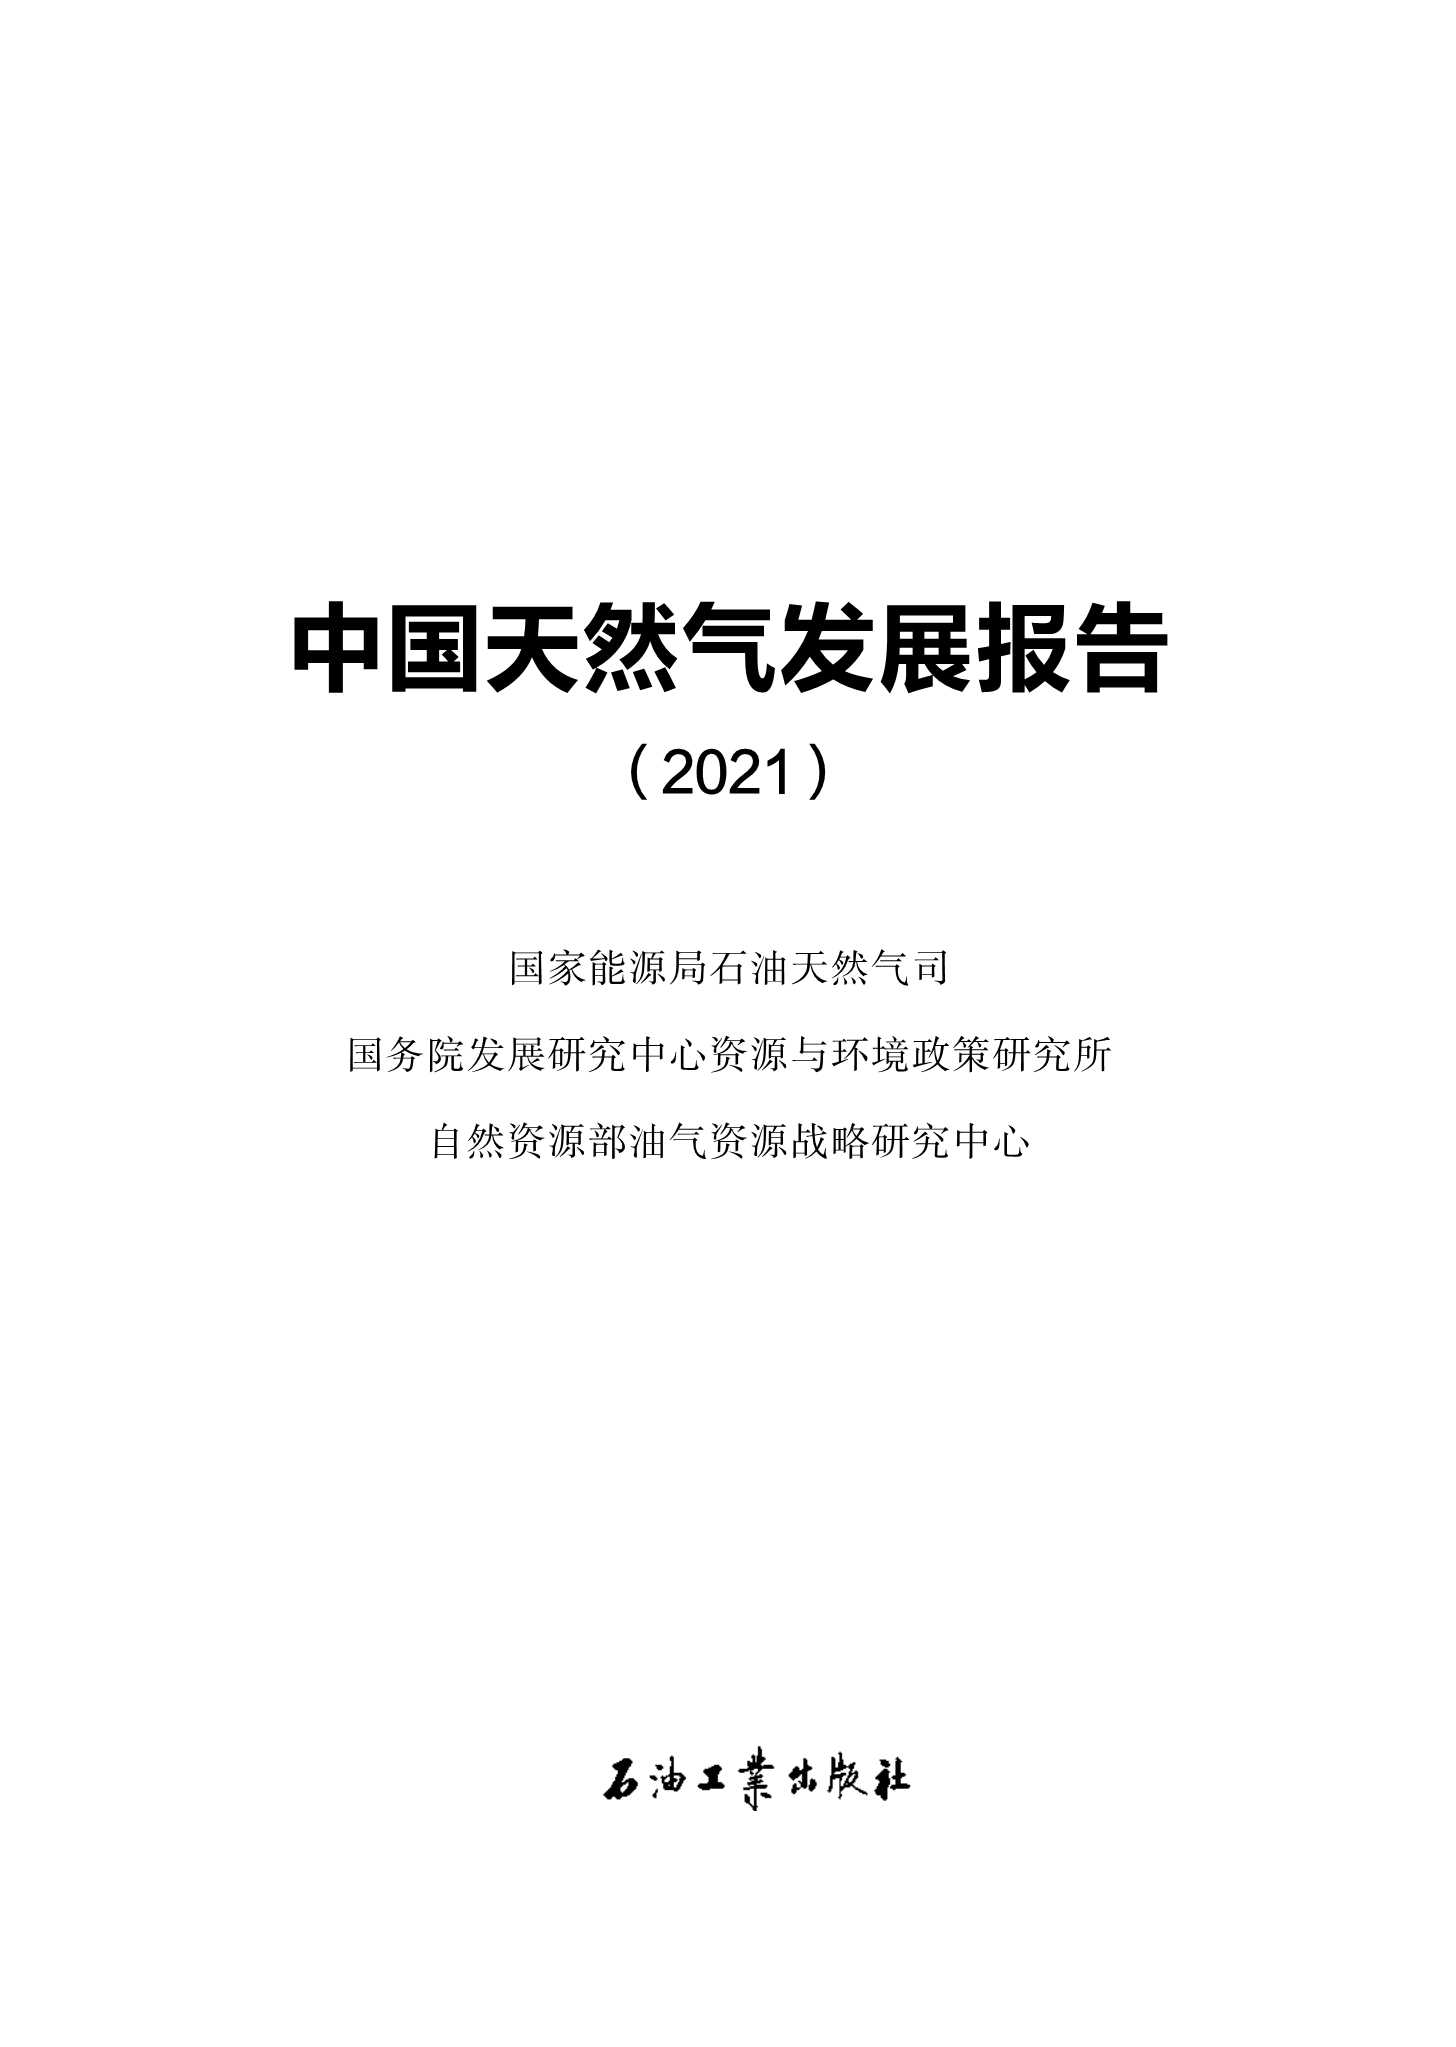 中国天然气发展报告（2021）-2021.09-31页